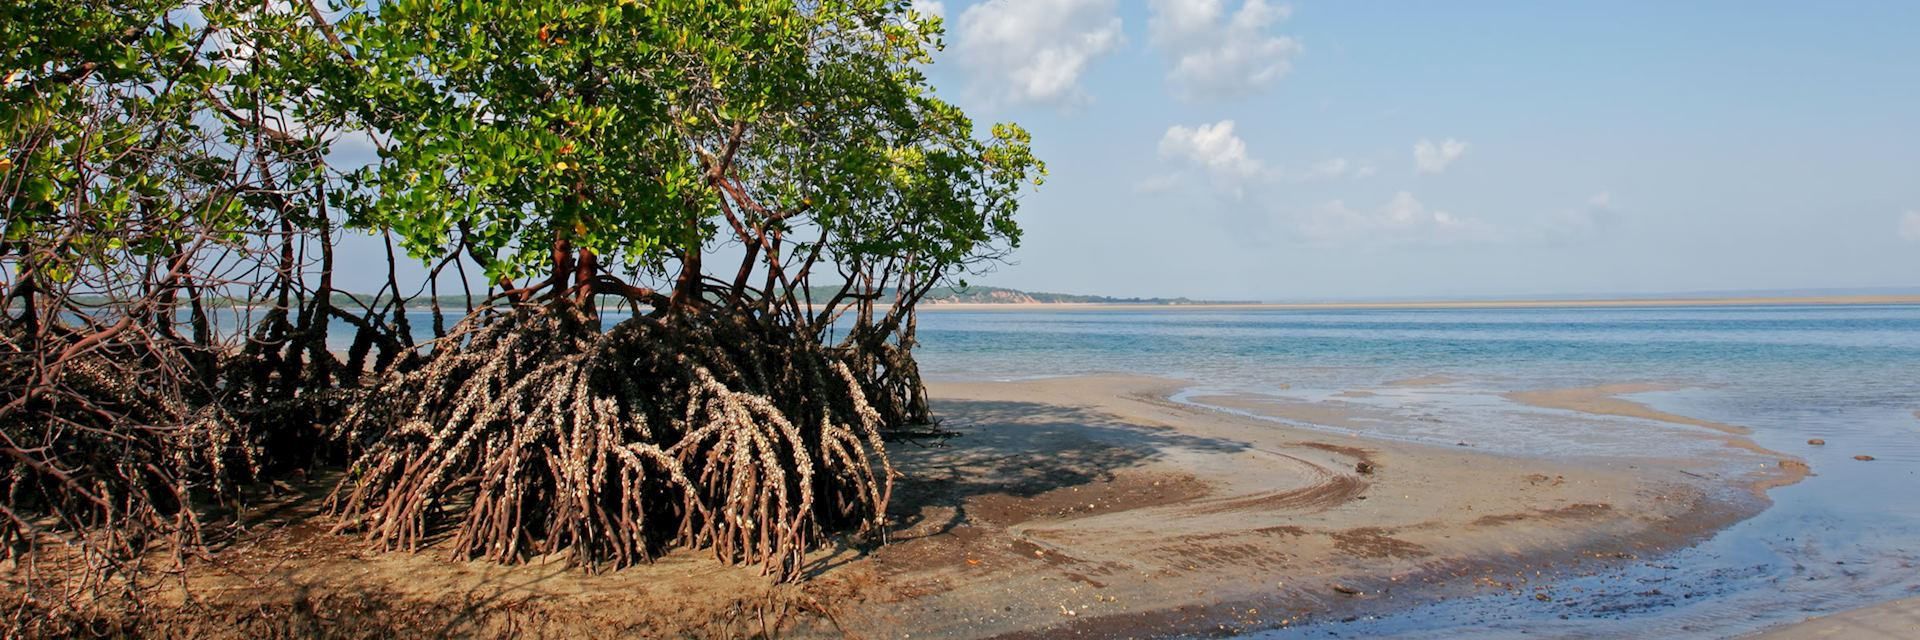 Mangrove trees, Mozambque beach